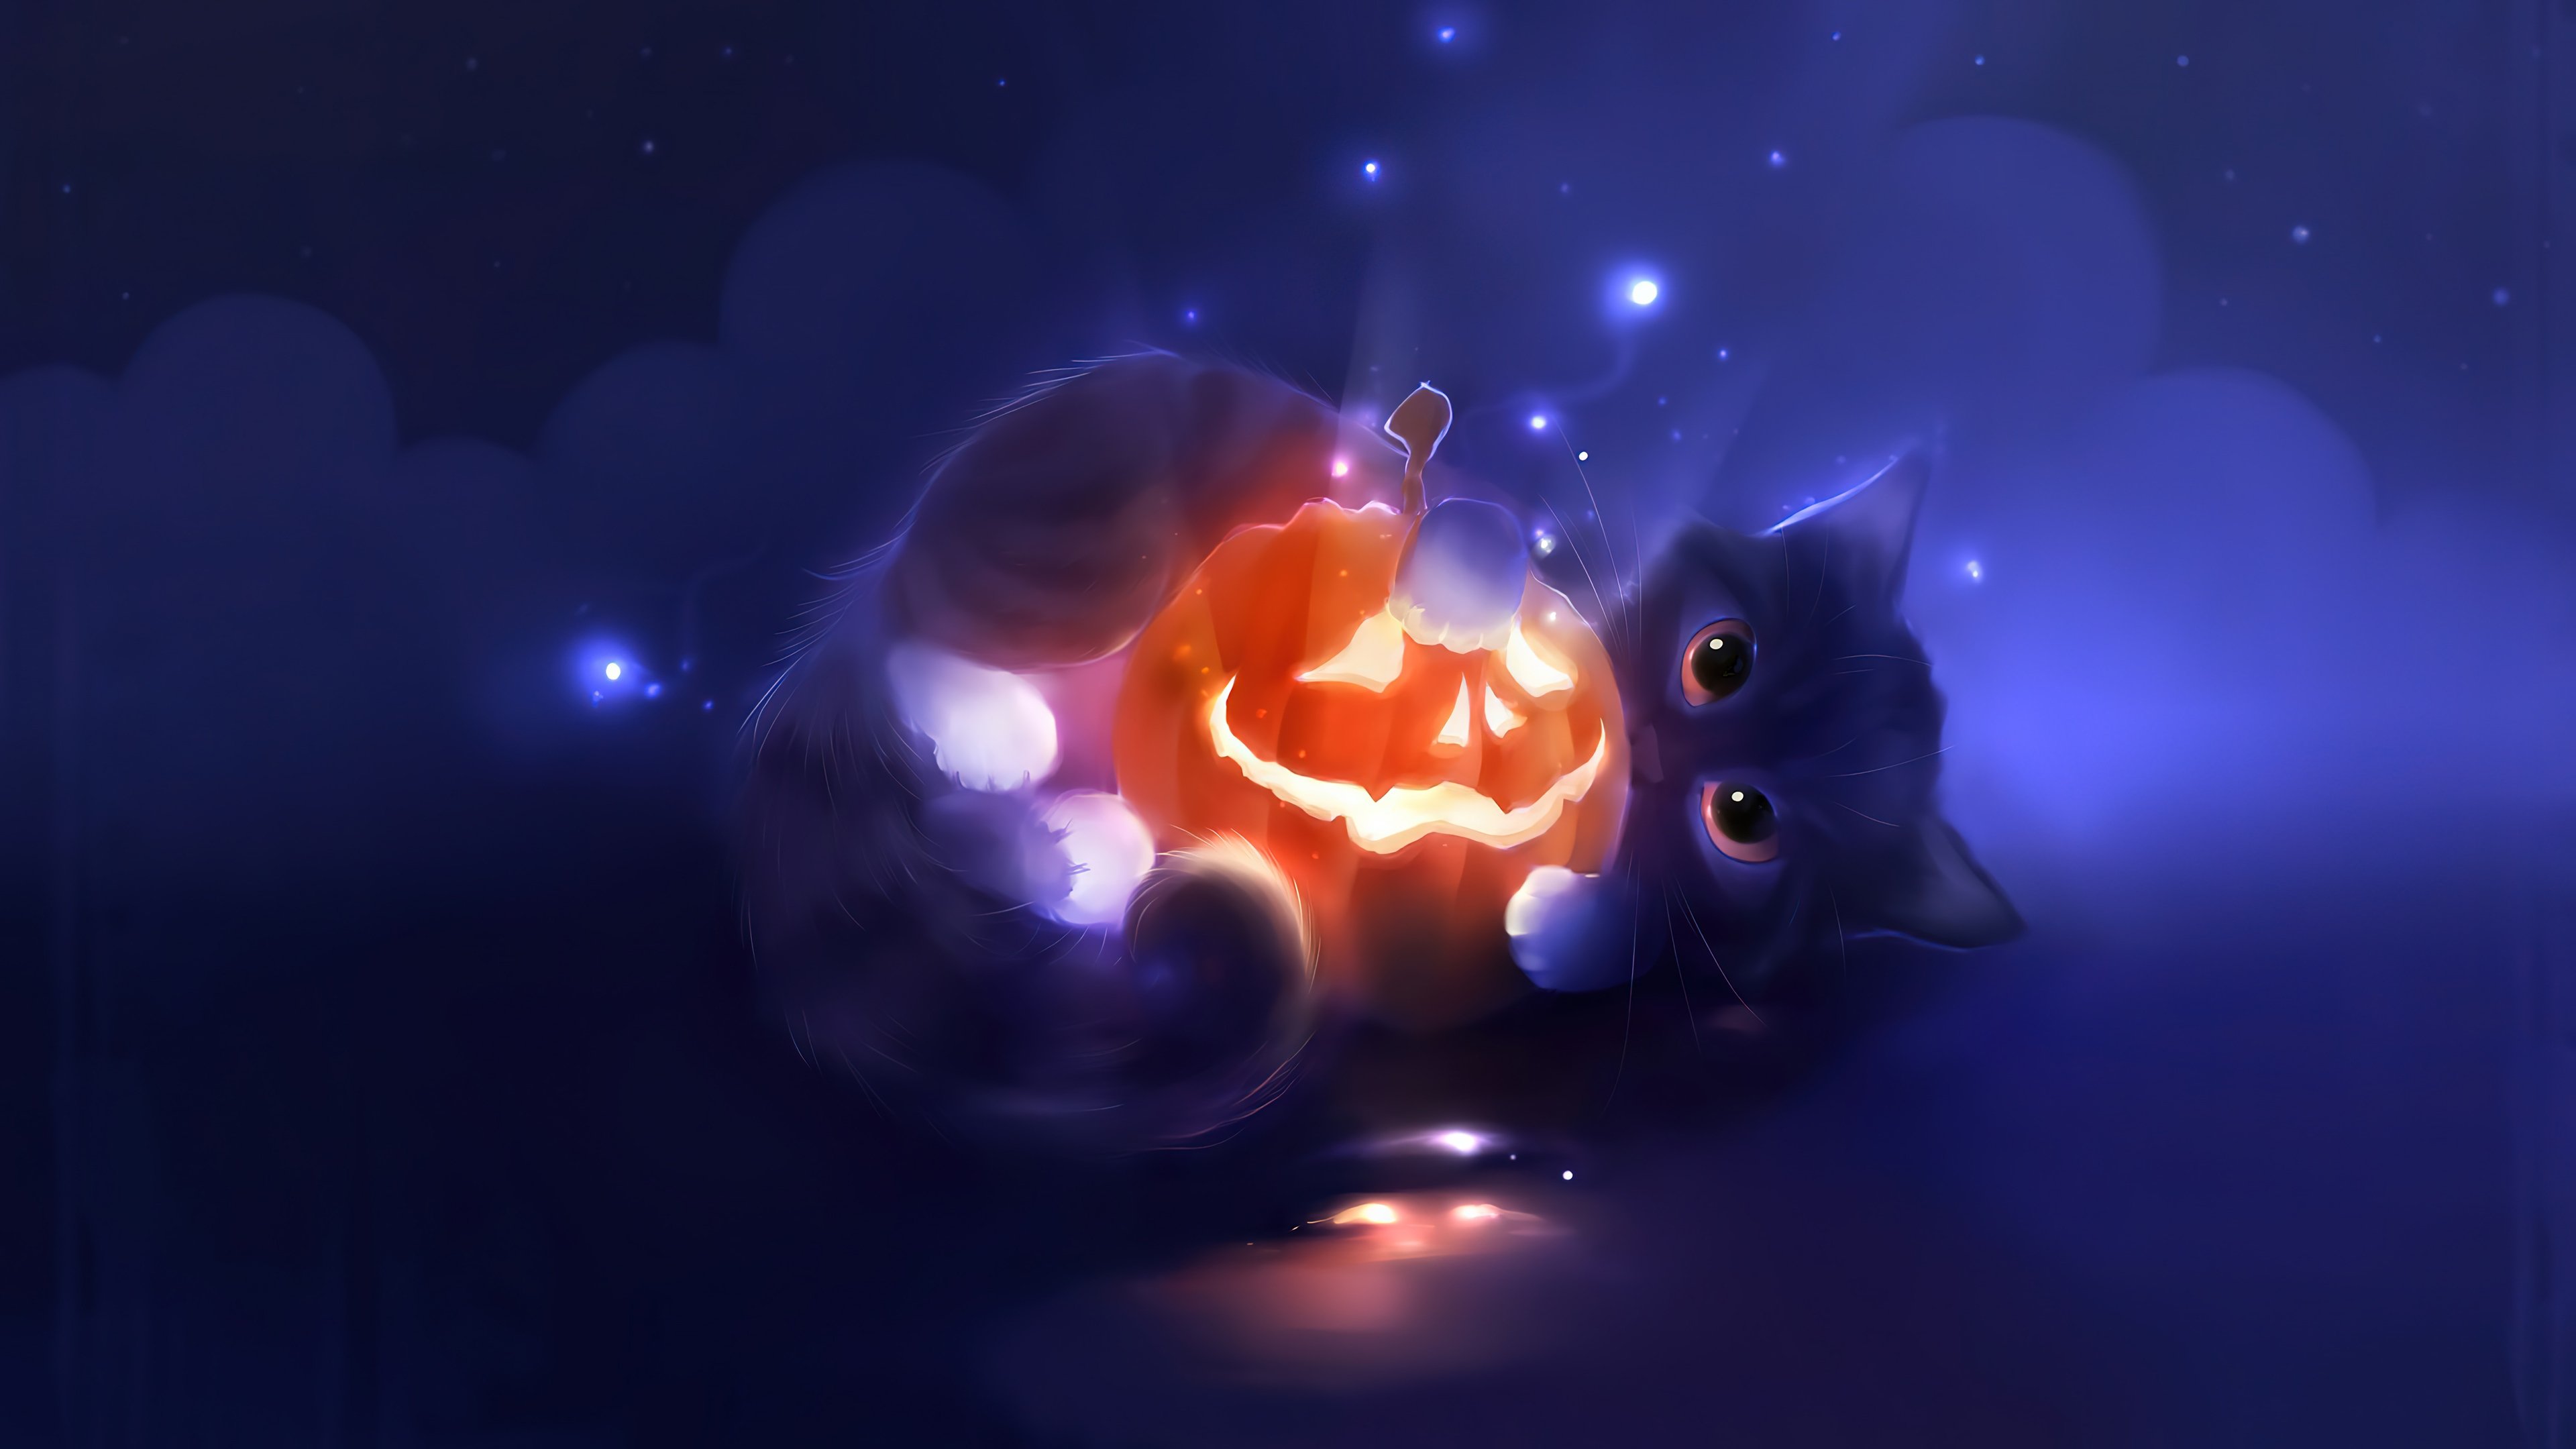 Wallpaper Kitten with pumpking